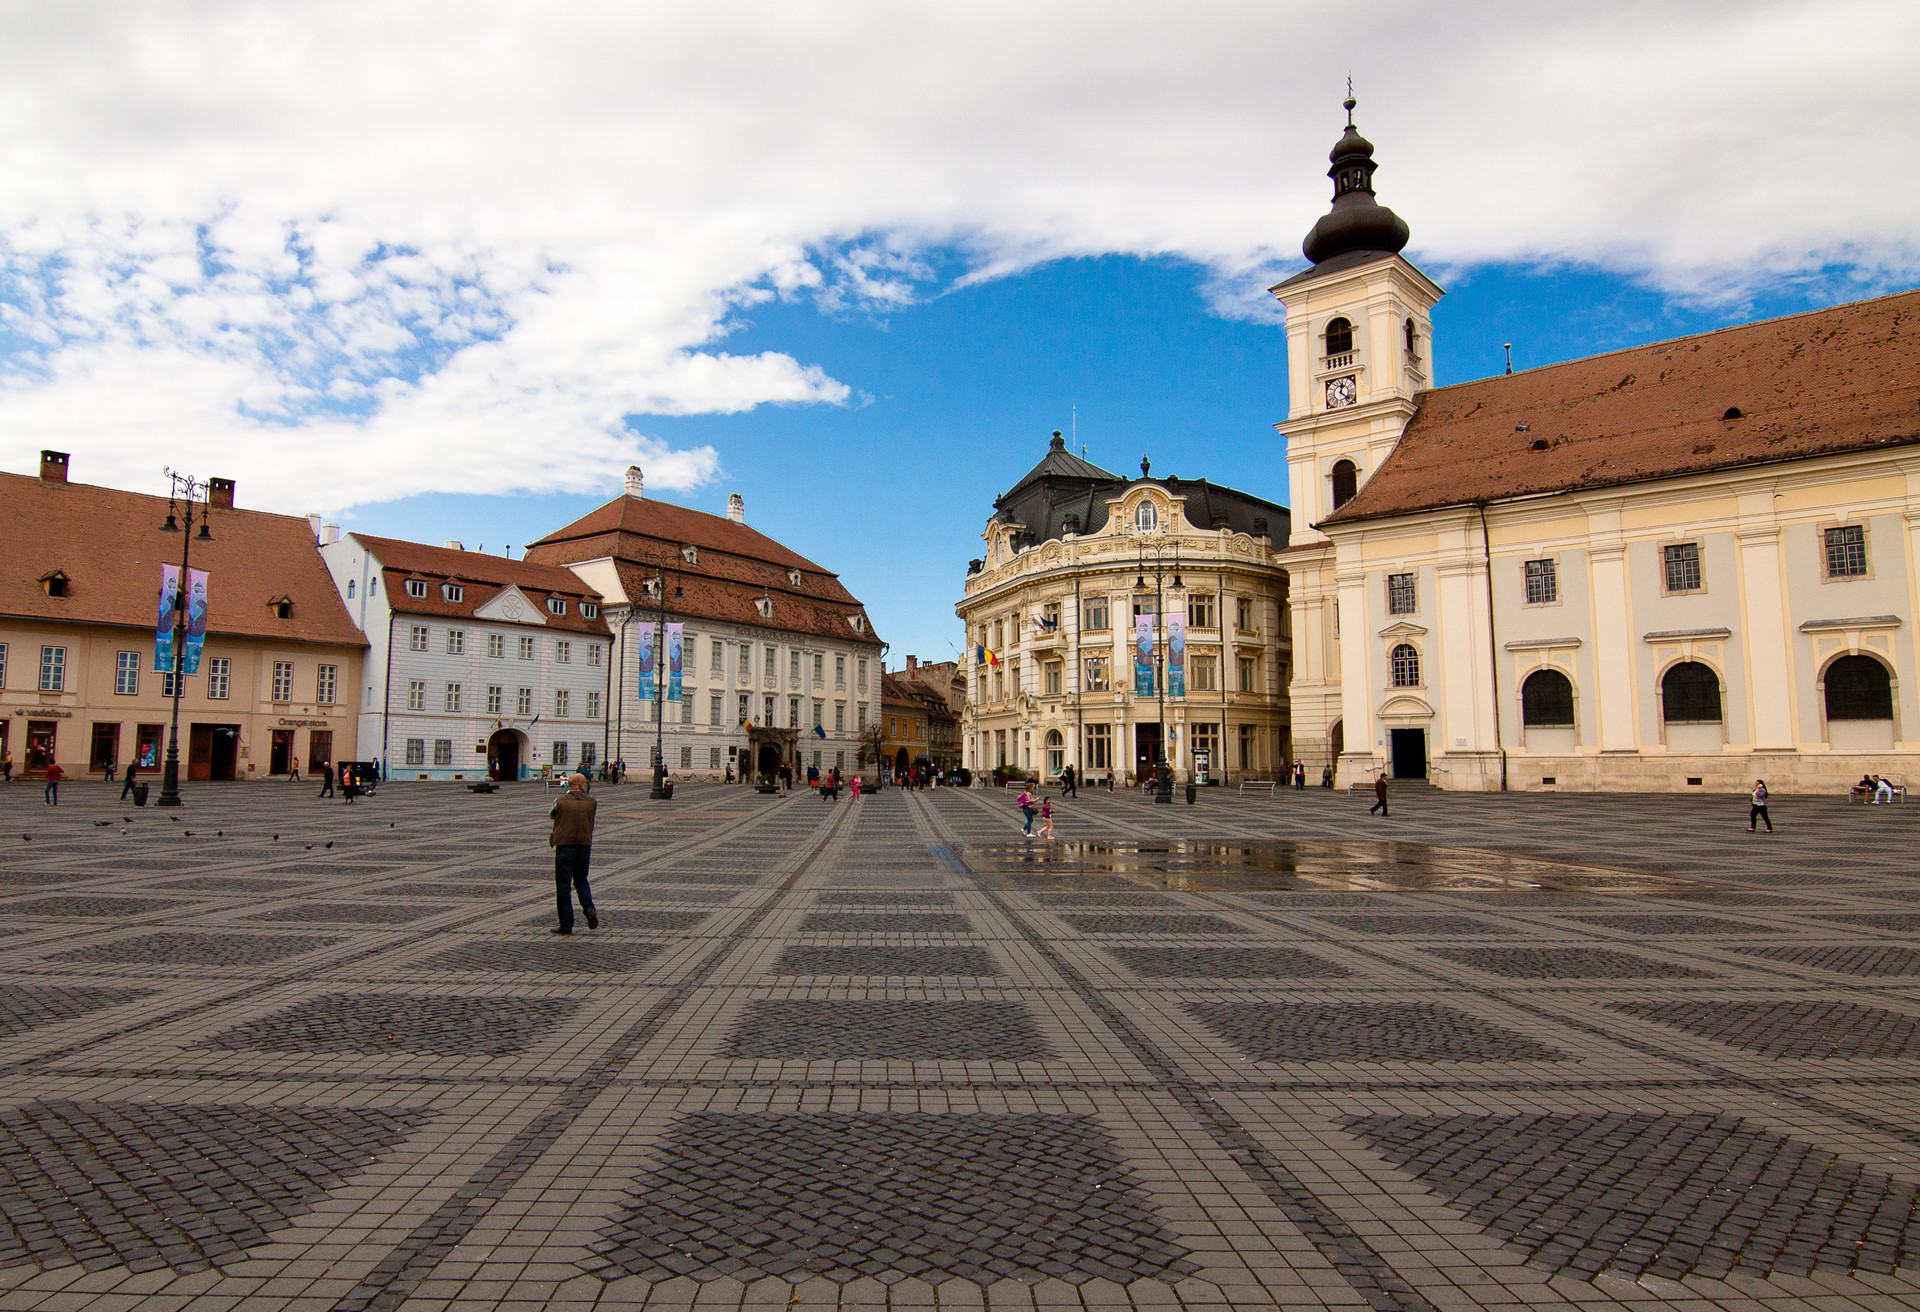 Duży Rynek w Sibiu to miejsce spotkań mieszkańców – przejdź się i delektuj kawą i piękną architekturą